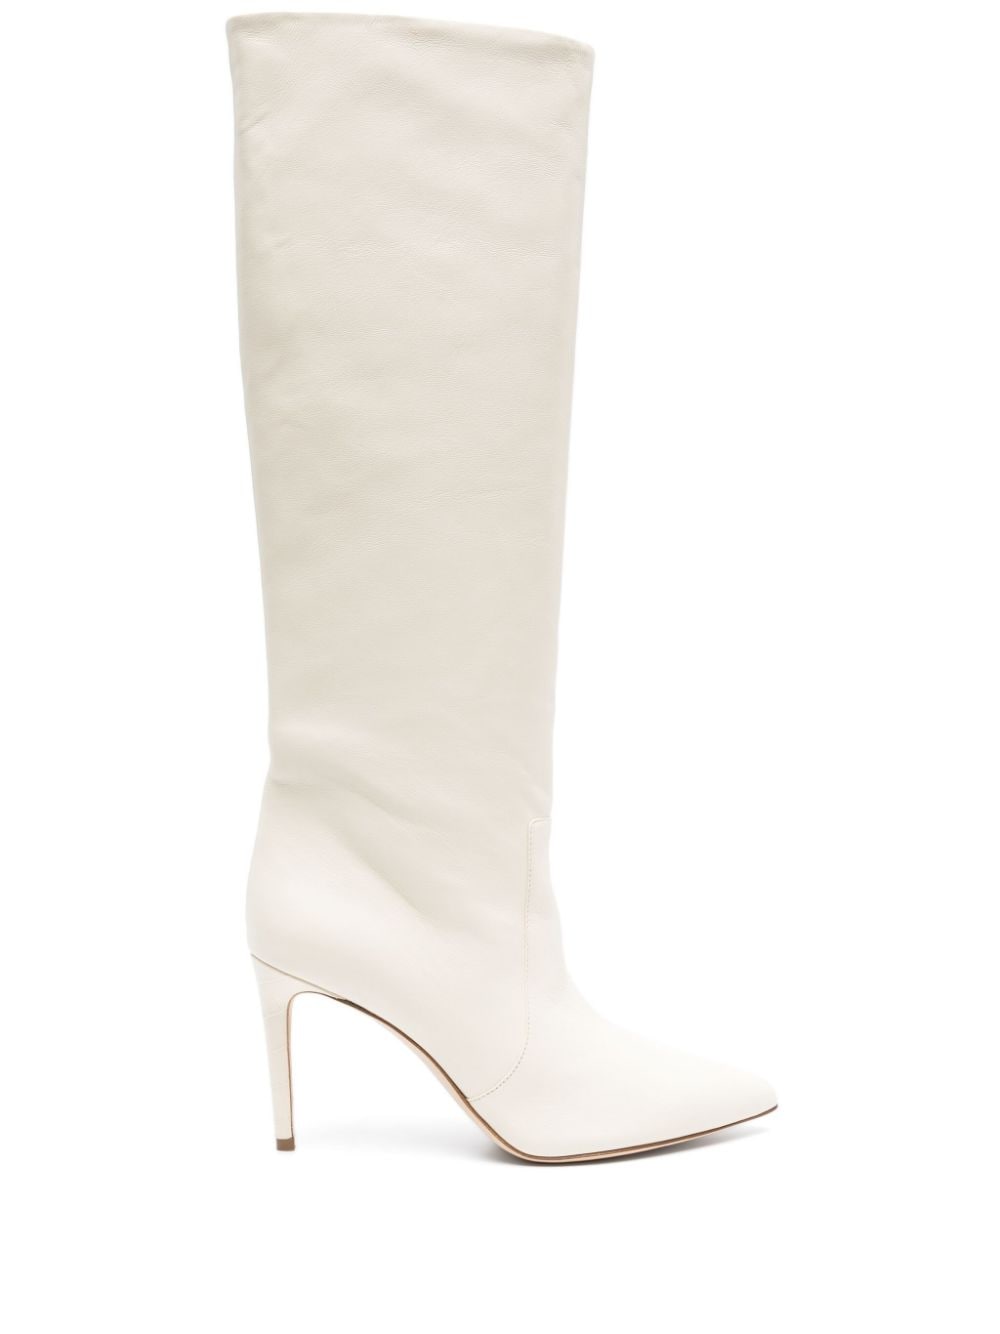 Paris Texas Stiletto 95mm leather boots - White von Paris Texas